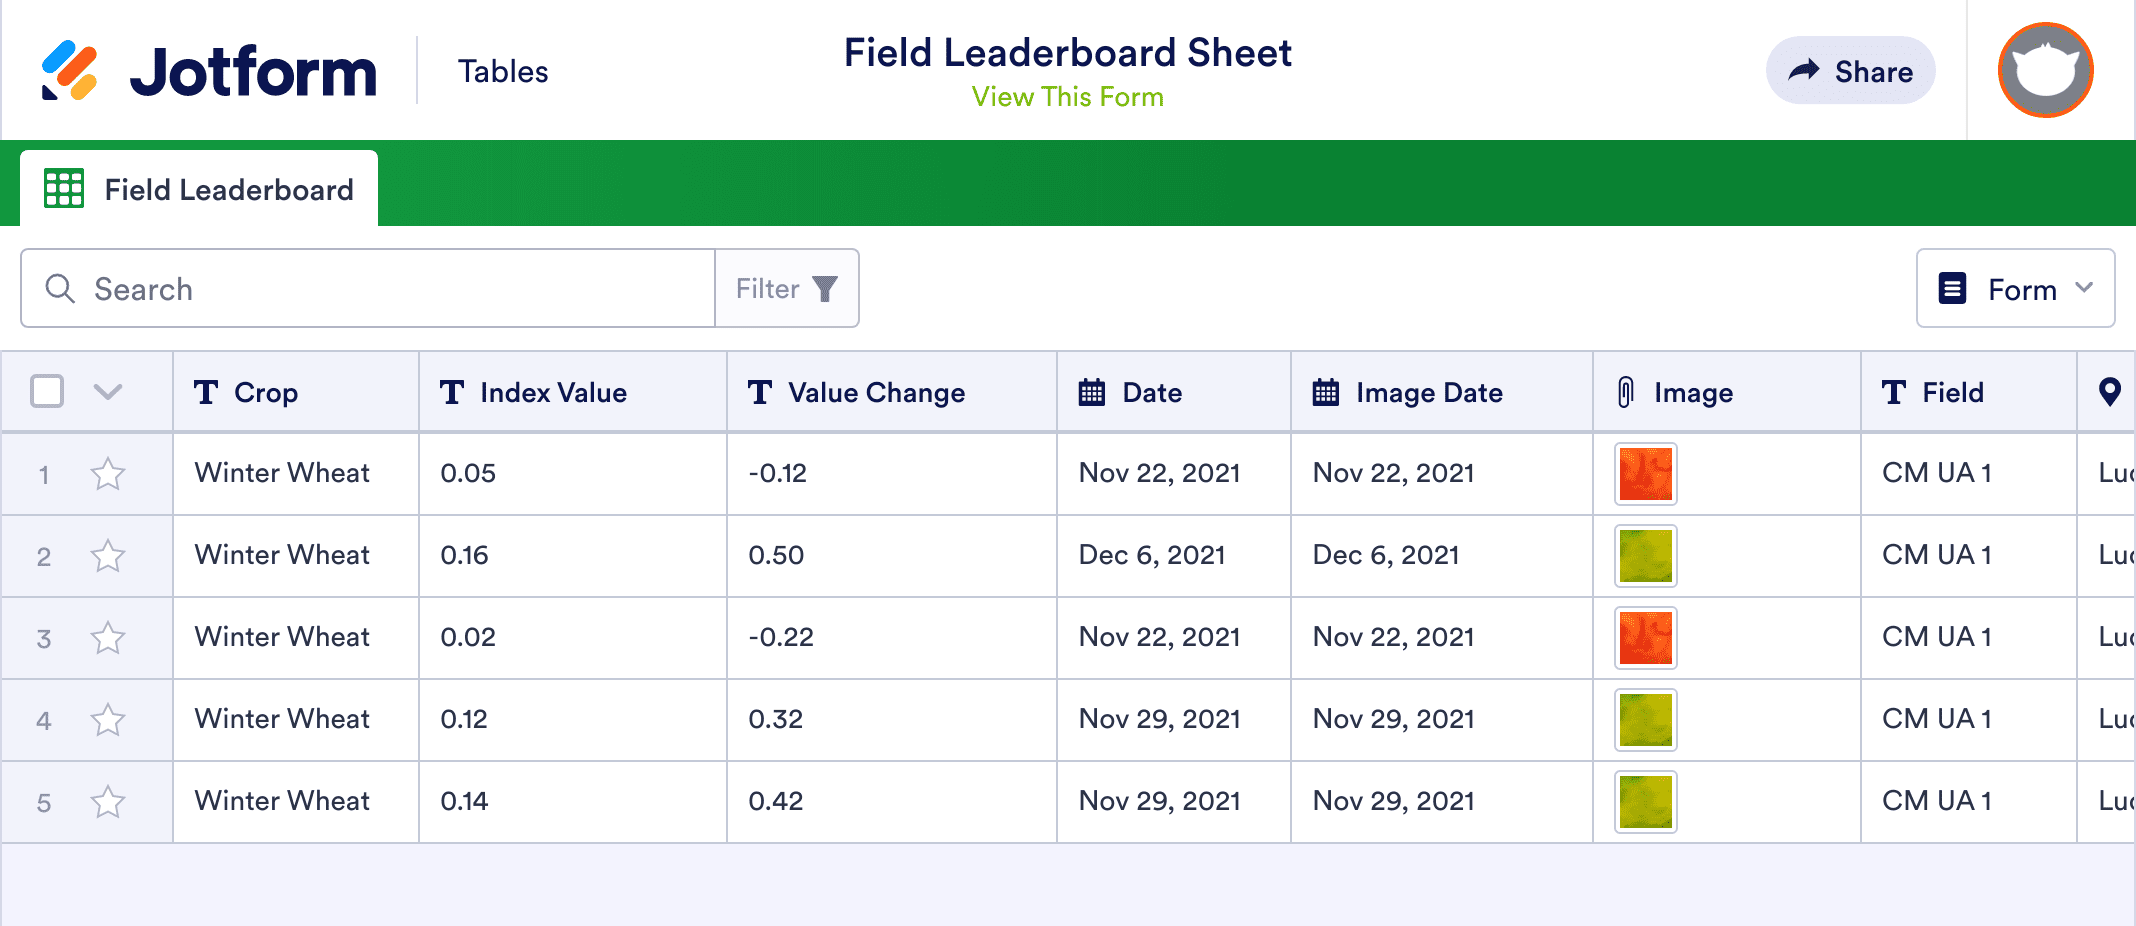 Field Leaderboard Sheet